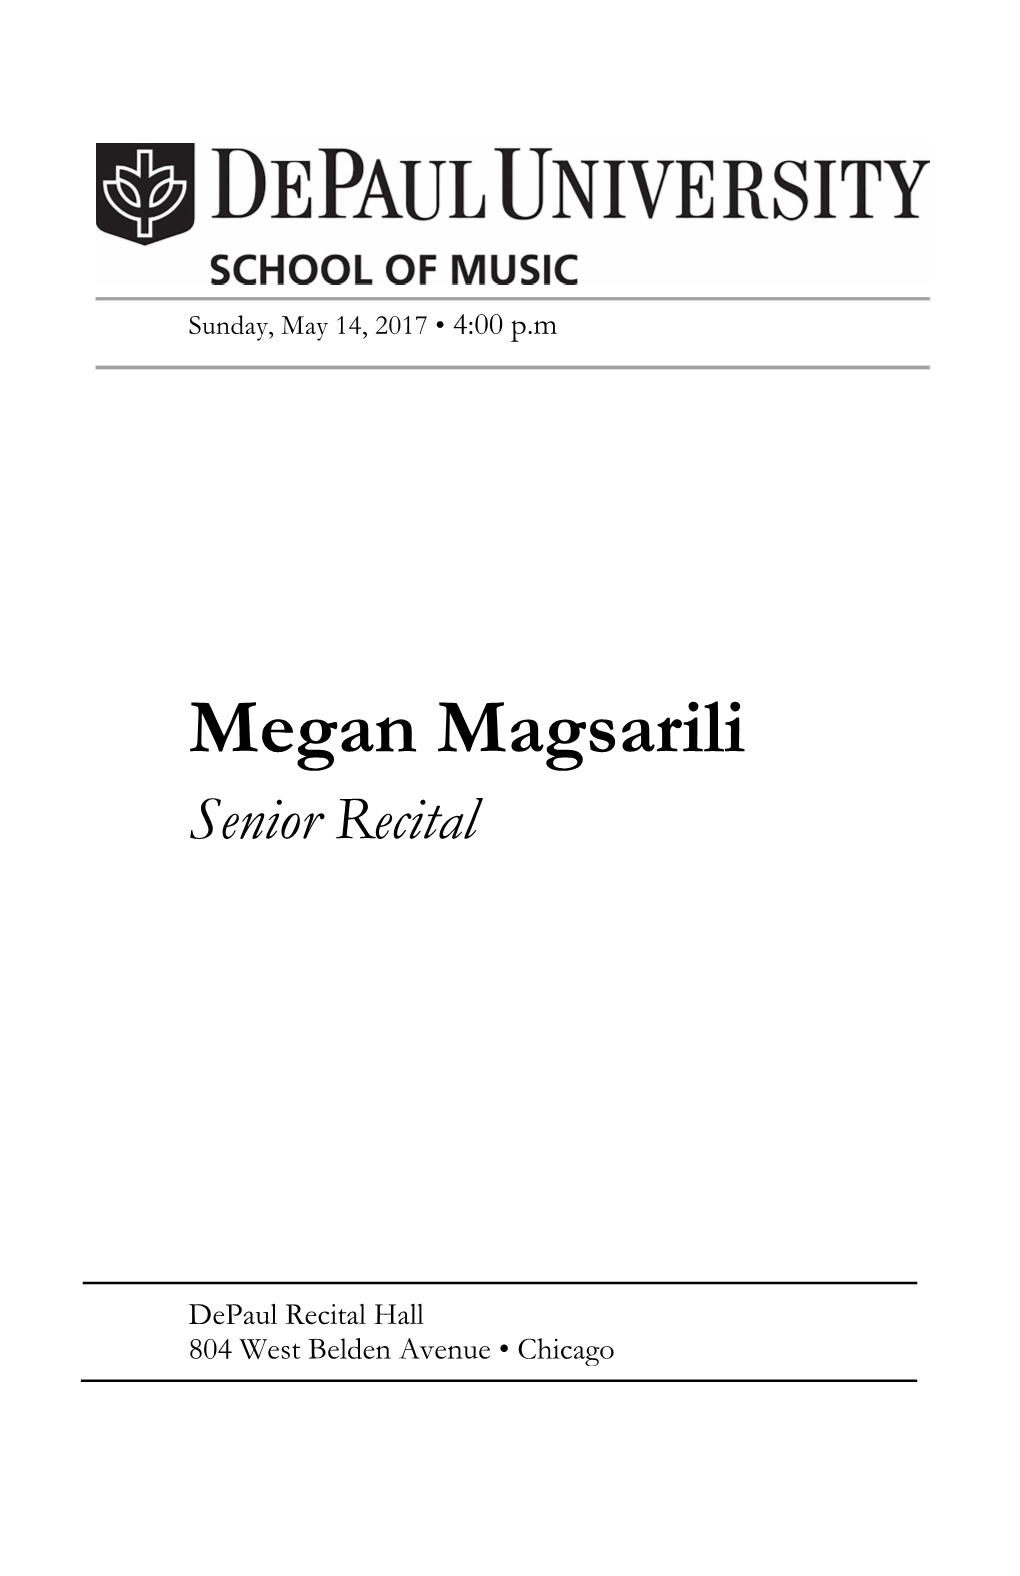 Megan Magsarili